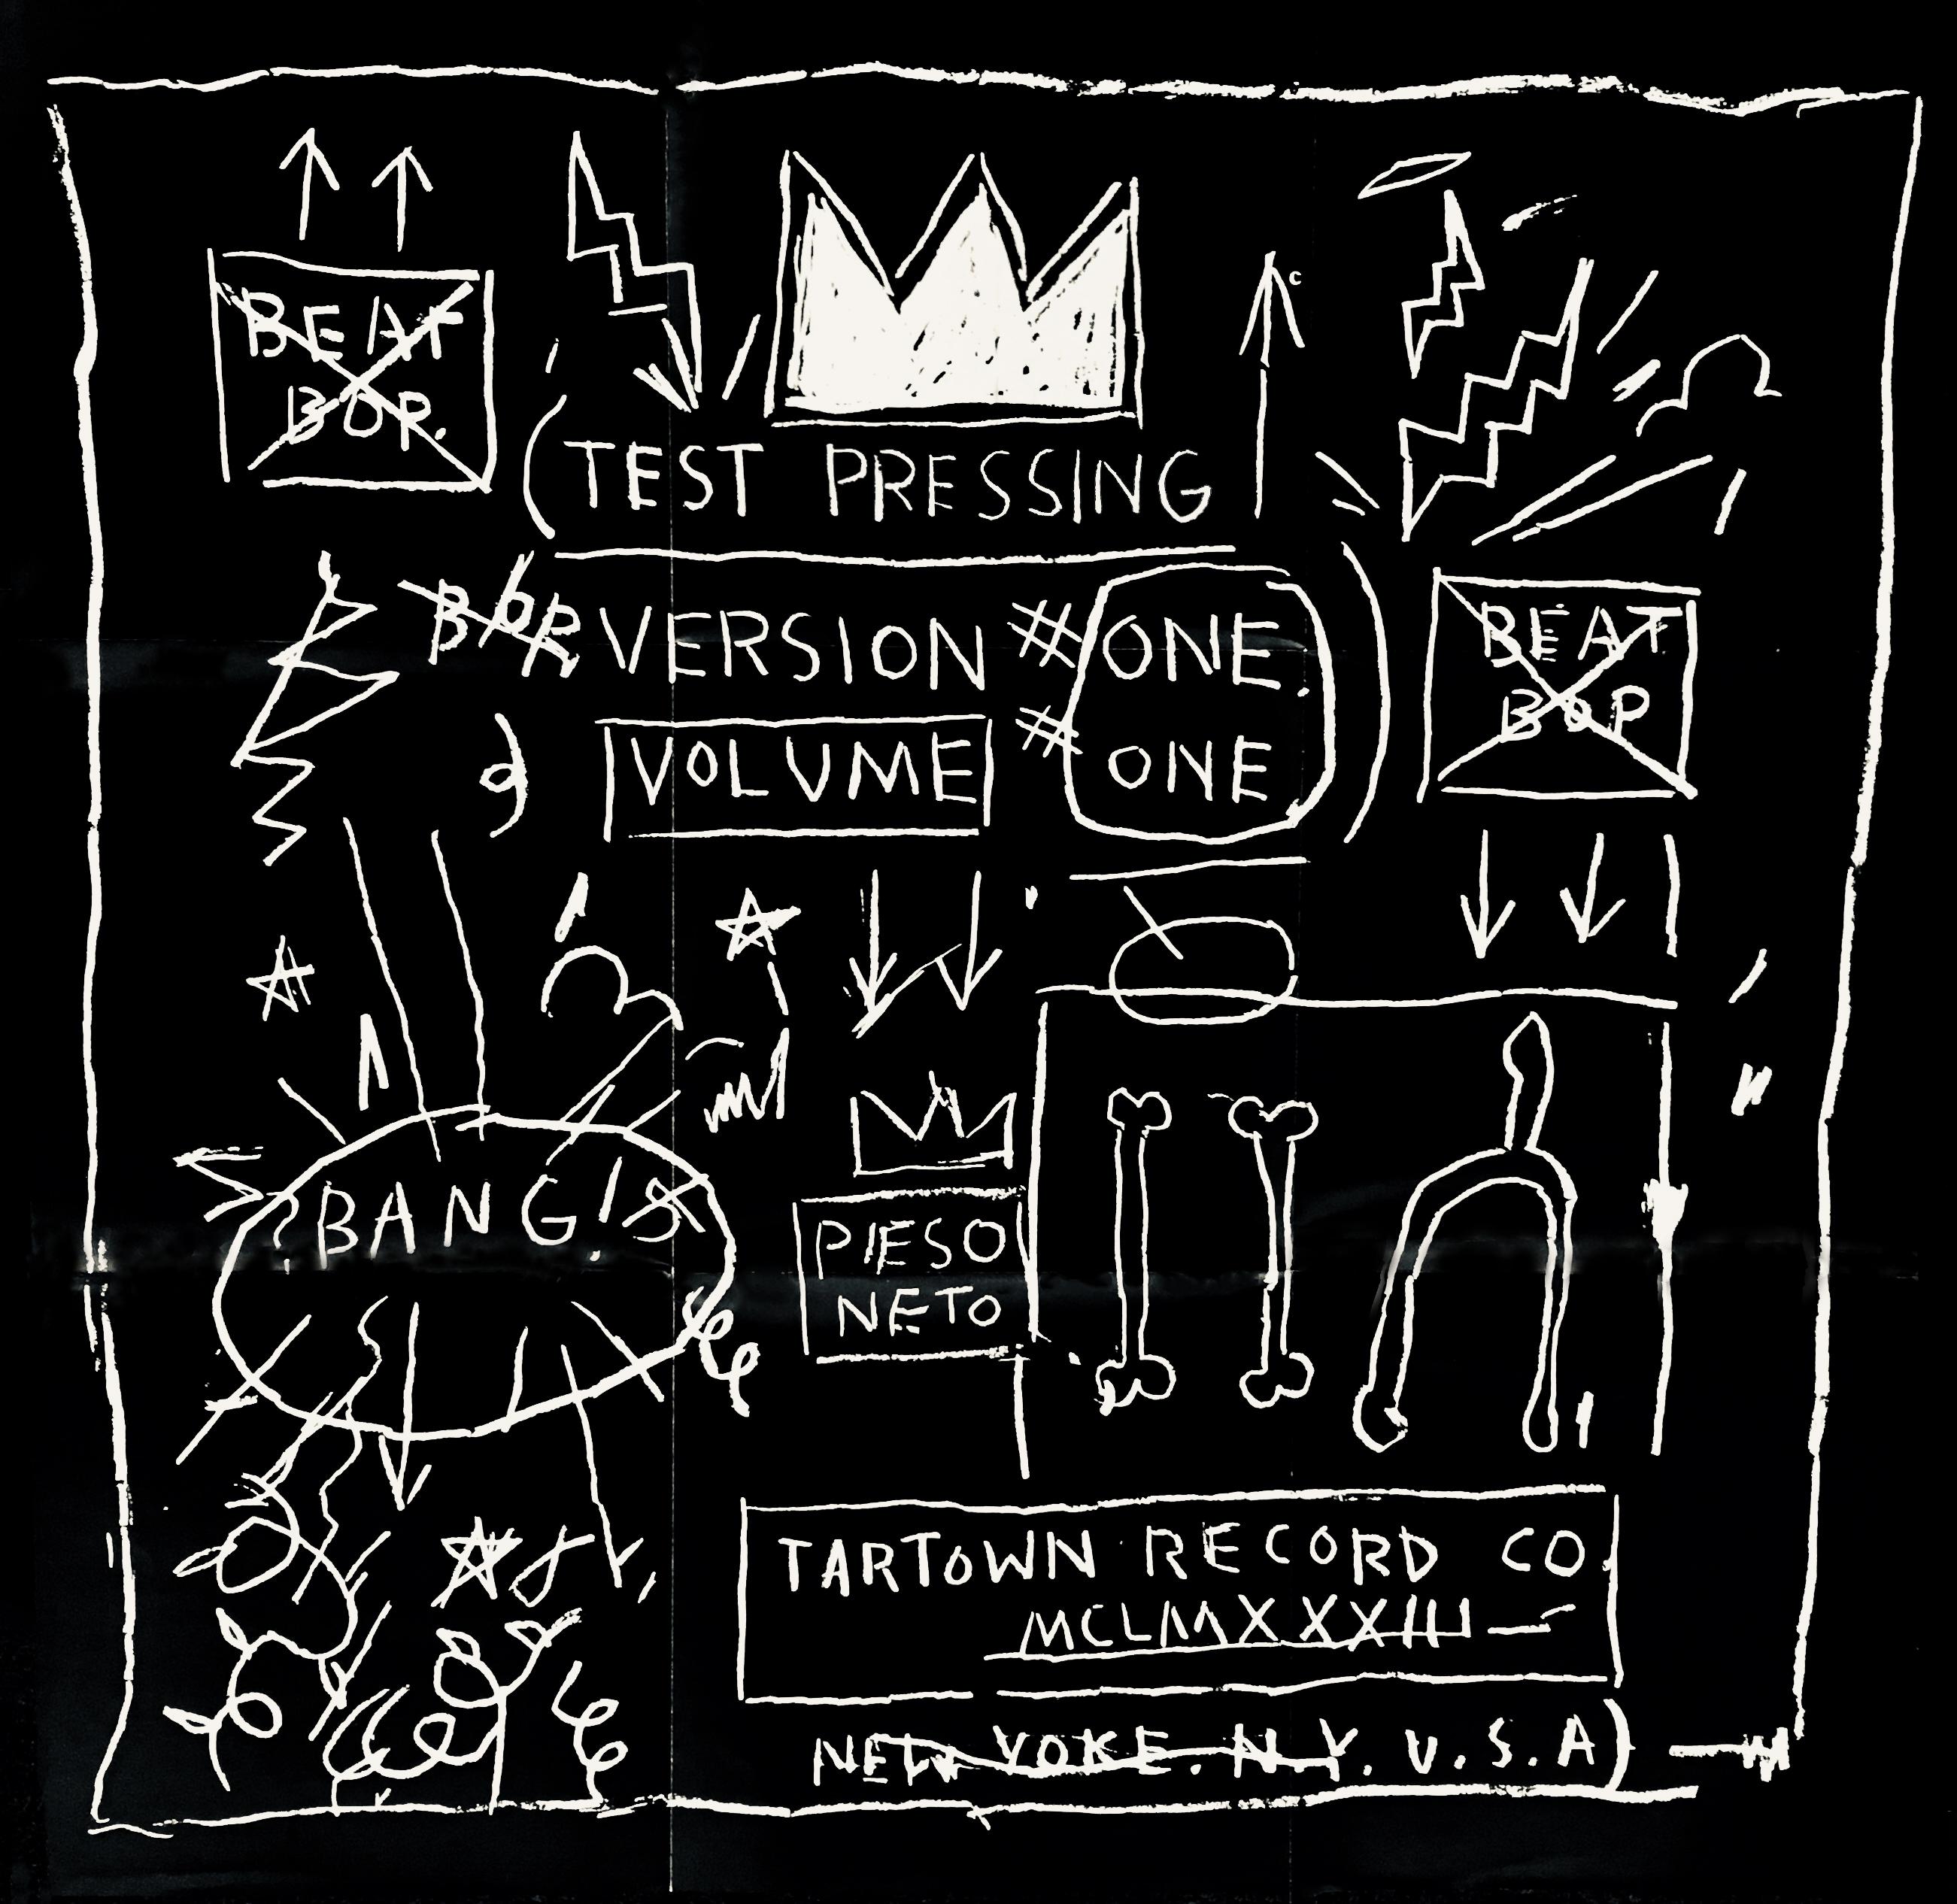 Basquiat record art 1983/2005 :
Ce disque de Basquiat Beat Bop a été publié vers 2005 et est accompagné d'une rare édition limitée d'une grande affiche dépliable recto-verso de 61 x 61 cm (24 x 24 pouces), réalisée à la manière de l'album. Les